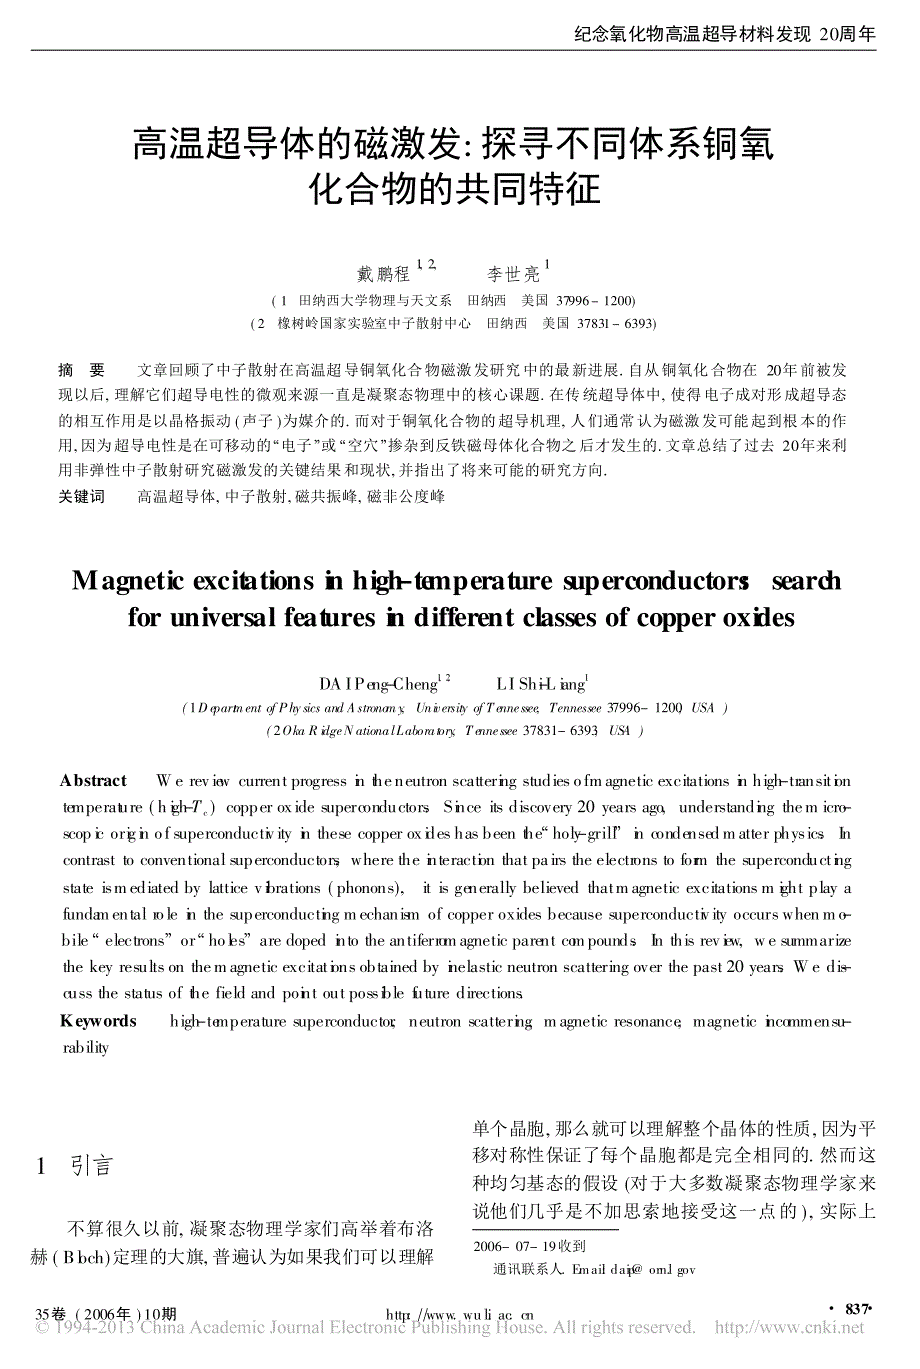 高温超导体的磁激发_探寻不同体系铜氧化合物的共同特征_第1页